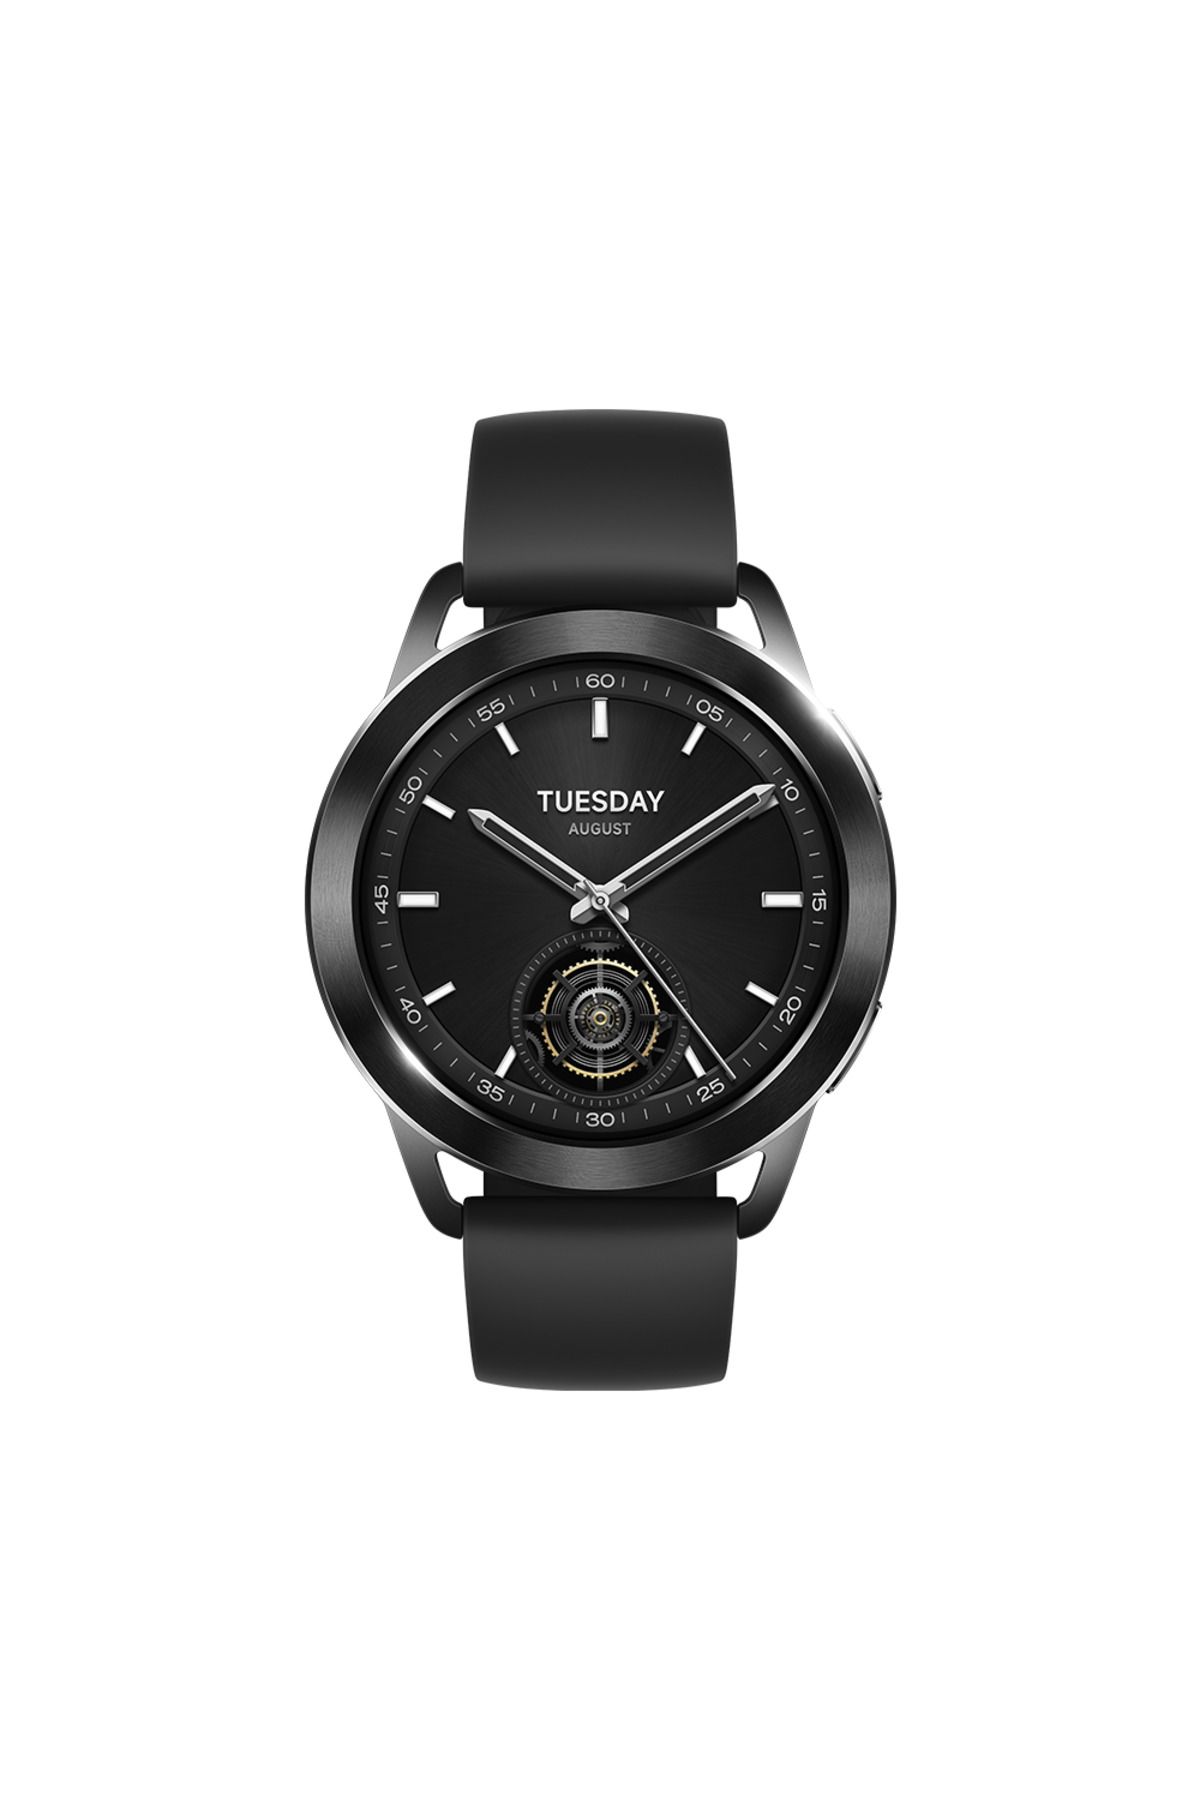 Xiaomi Watch S3 Siyah